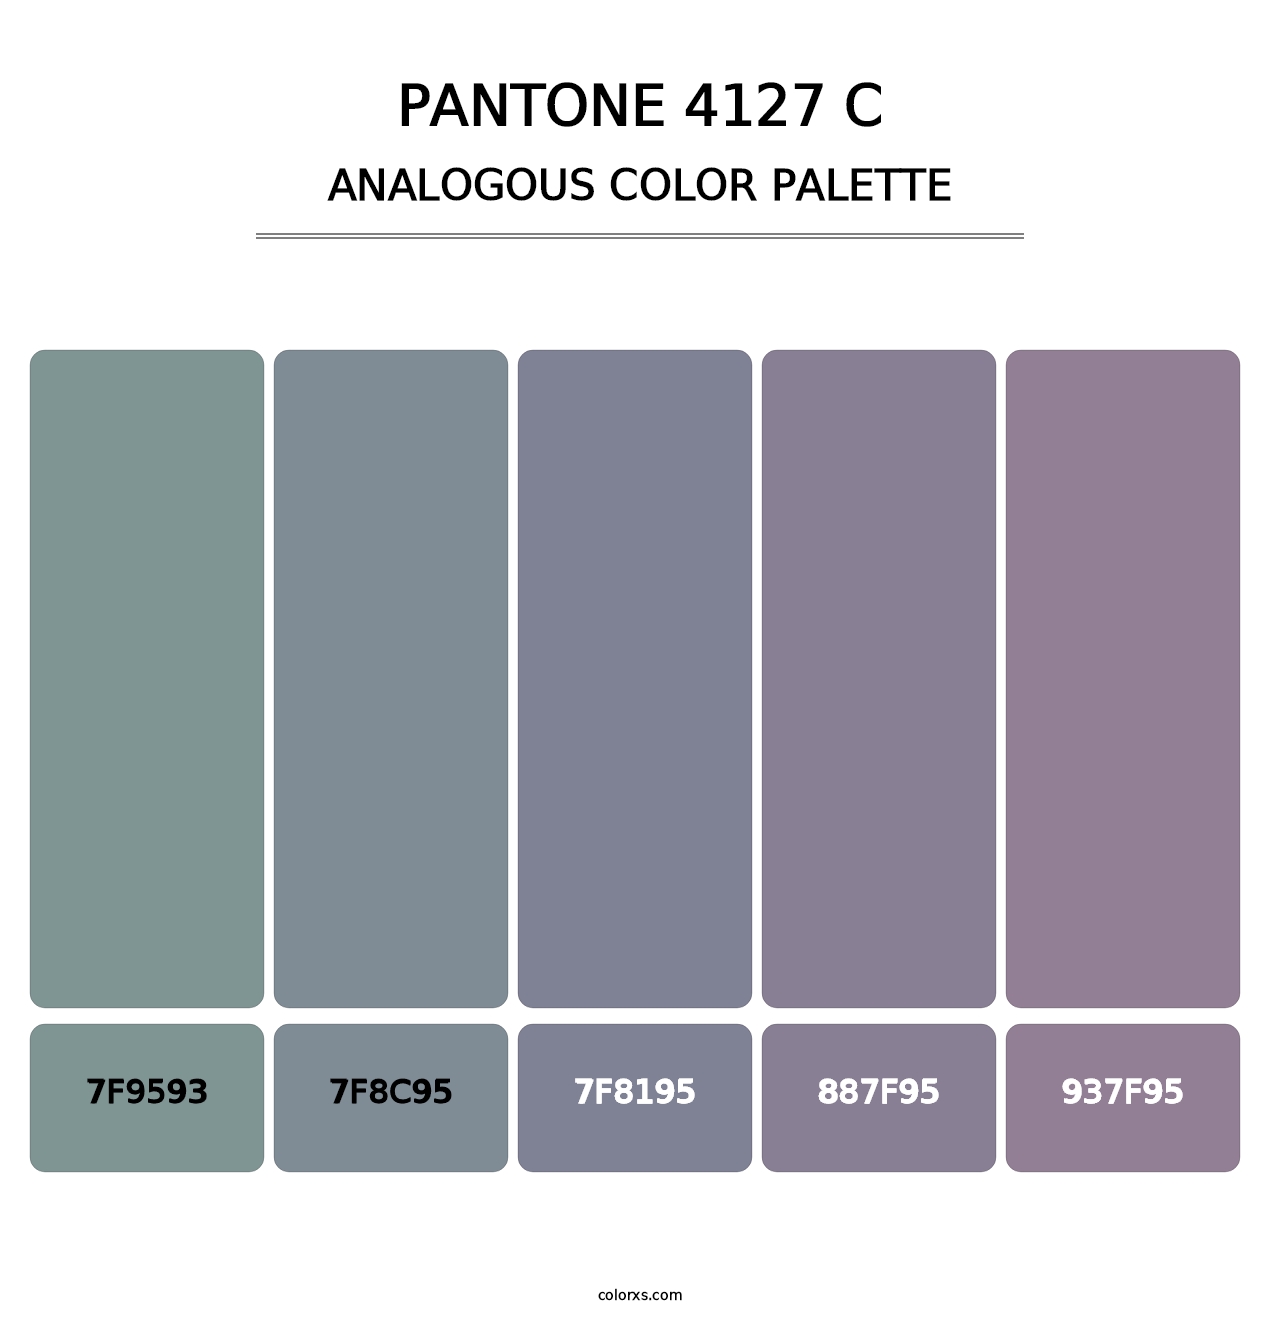 PANTONE 4127 C - Analogous Color Palette